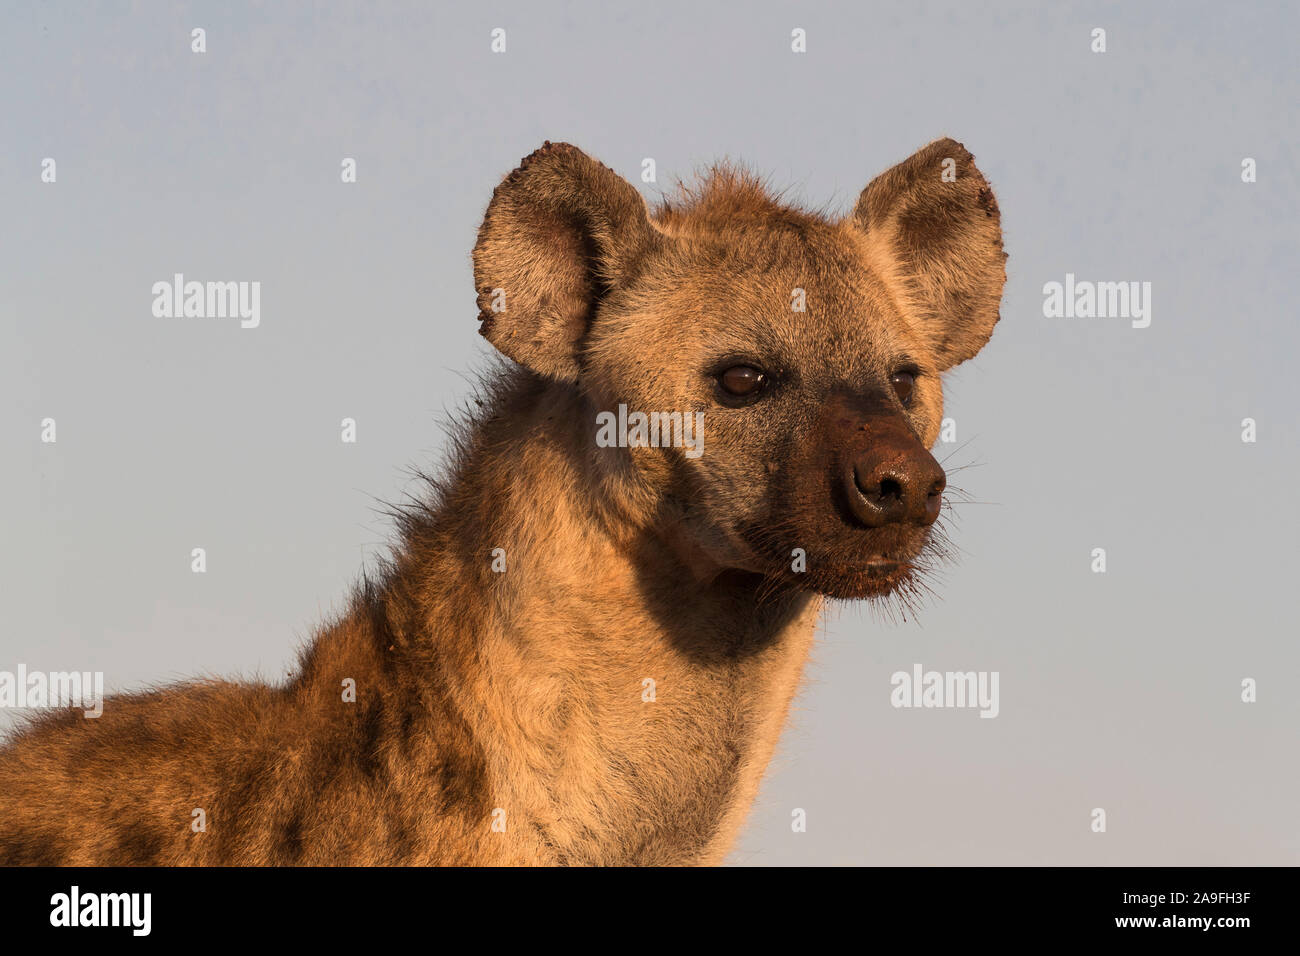 L'Hyène tachetée (Crocuta crocuta), Zimanga Private Game Reserve, KwaZulu-Natal, Afrique du Sud Banque D'Images